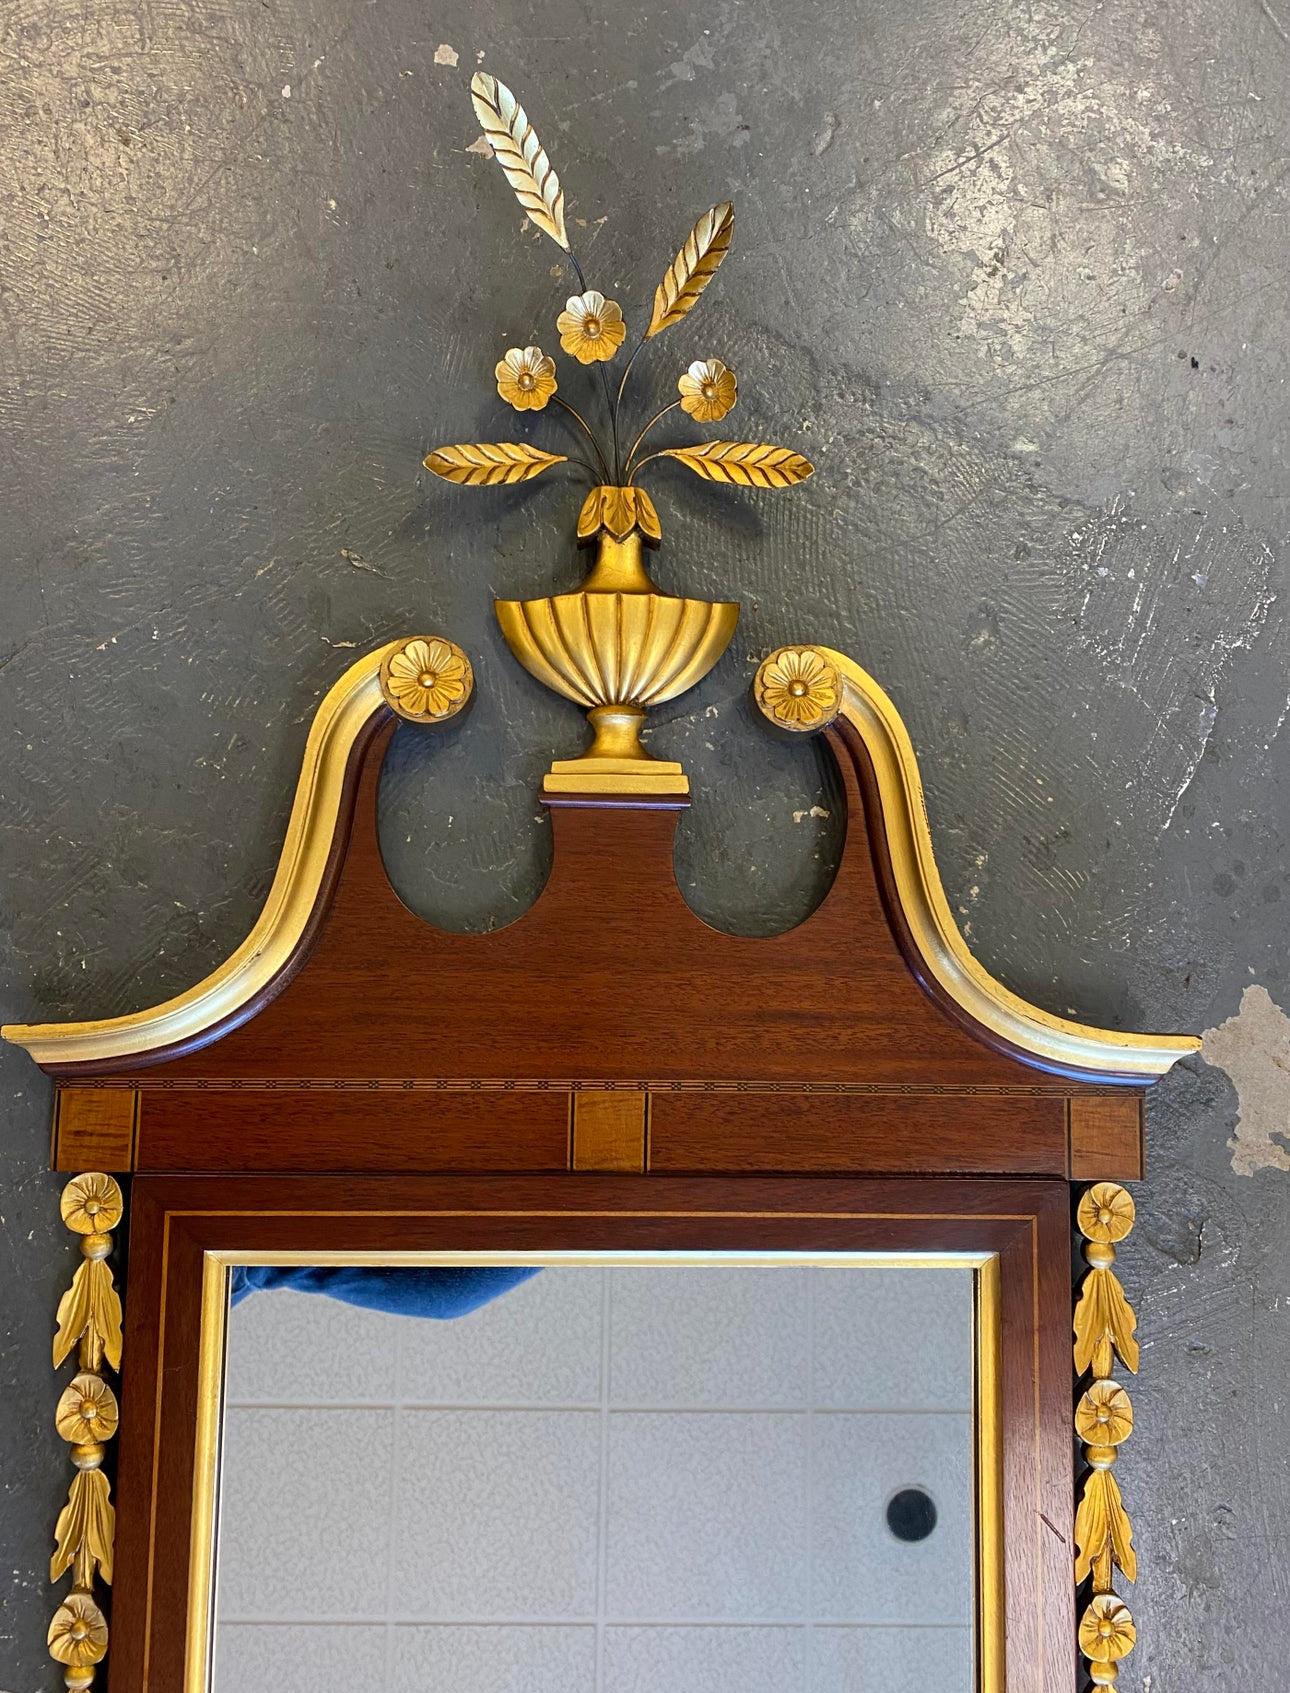 🌟 Donnez à votre maison une élégance intemporelle ! 🌟

Voici notre magnifique miroir en bois d'acajou orné d'ornements en feuilles de laiton et de détails dorés exquis !

Entrez dans le charme de l'ère néoclassique et imprégnez votre espace de vie